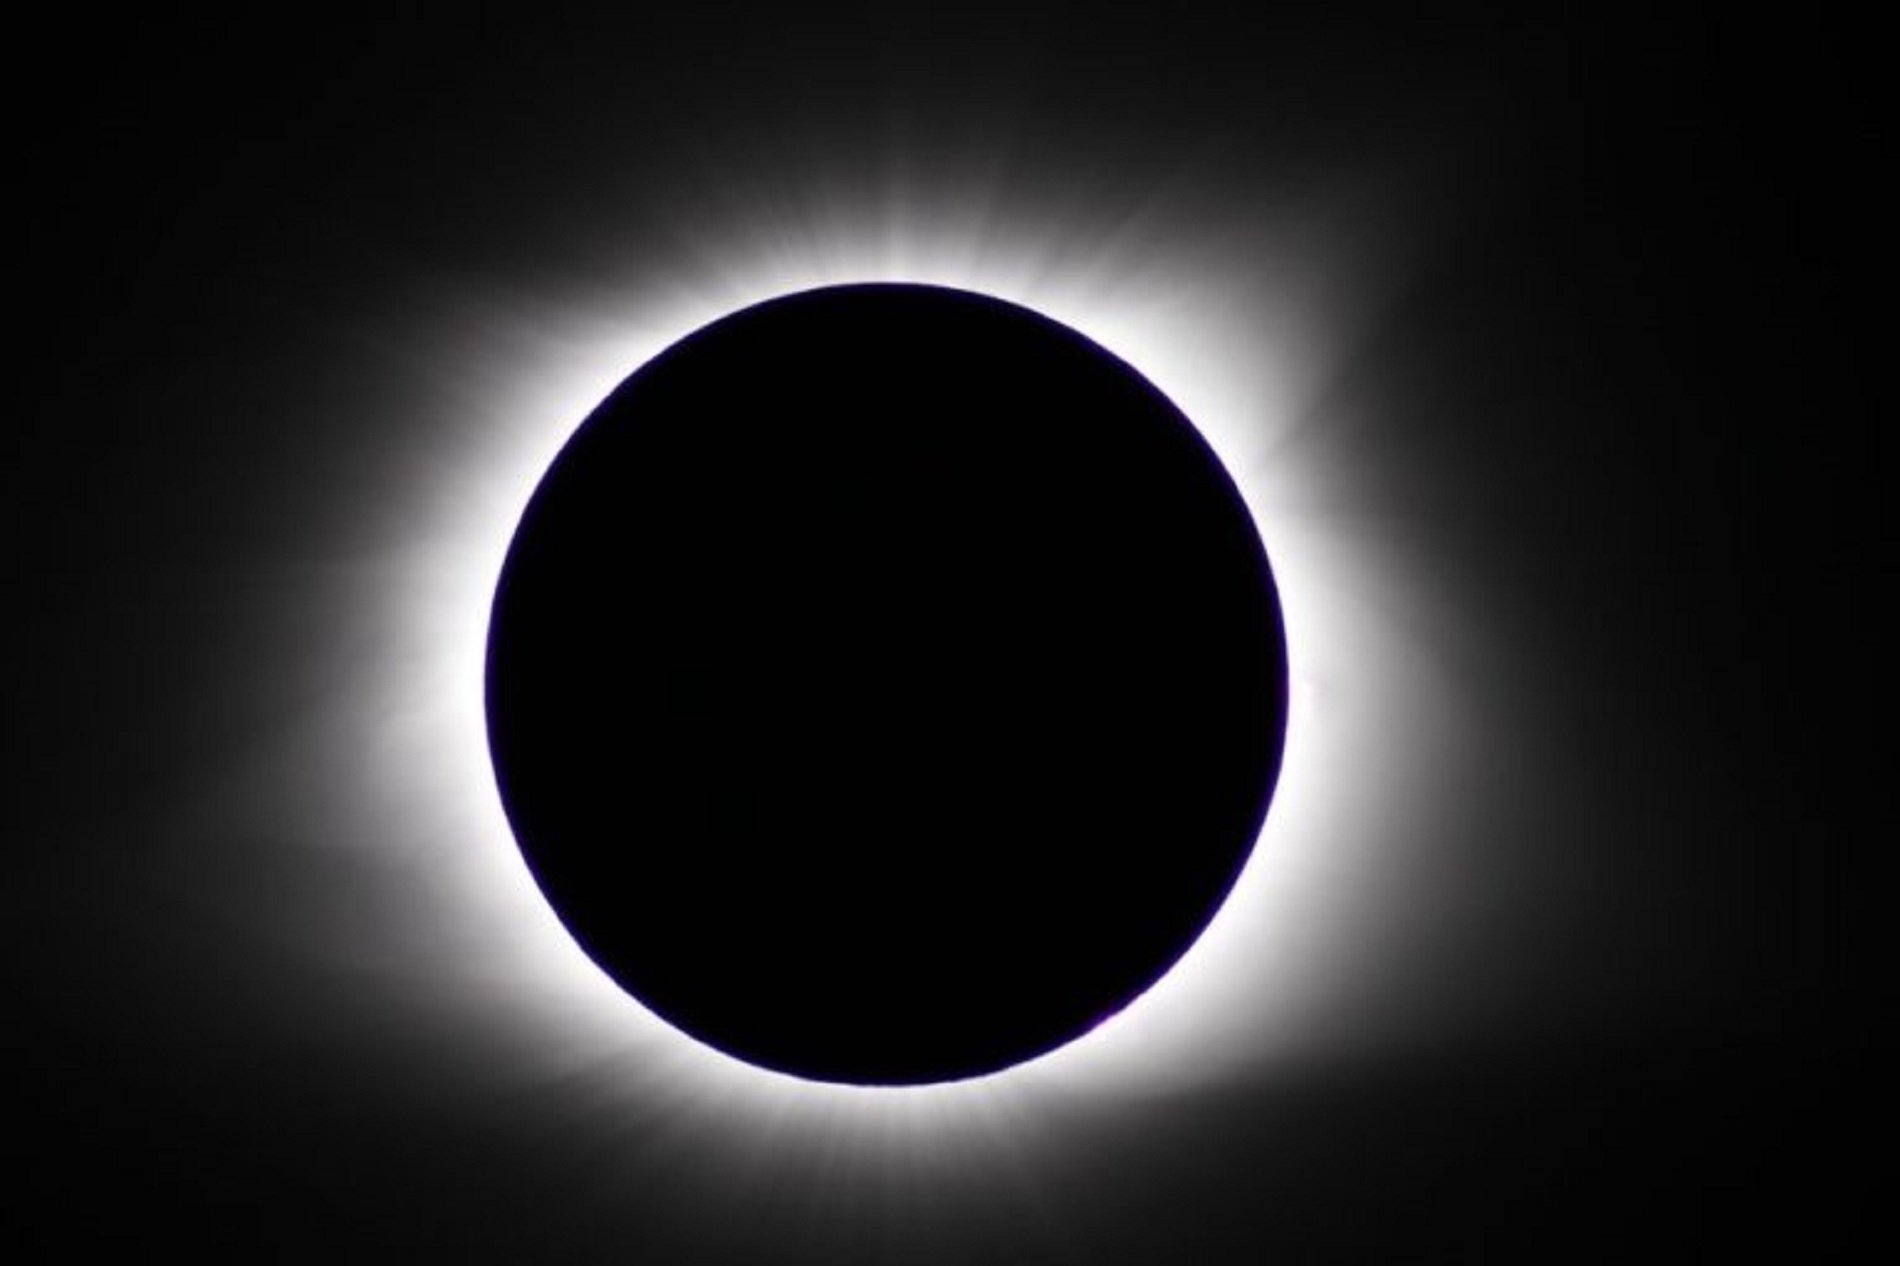 Eclipsi solar 2021: com, quan i on veure'l